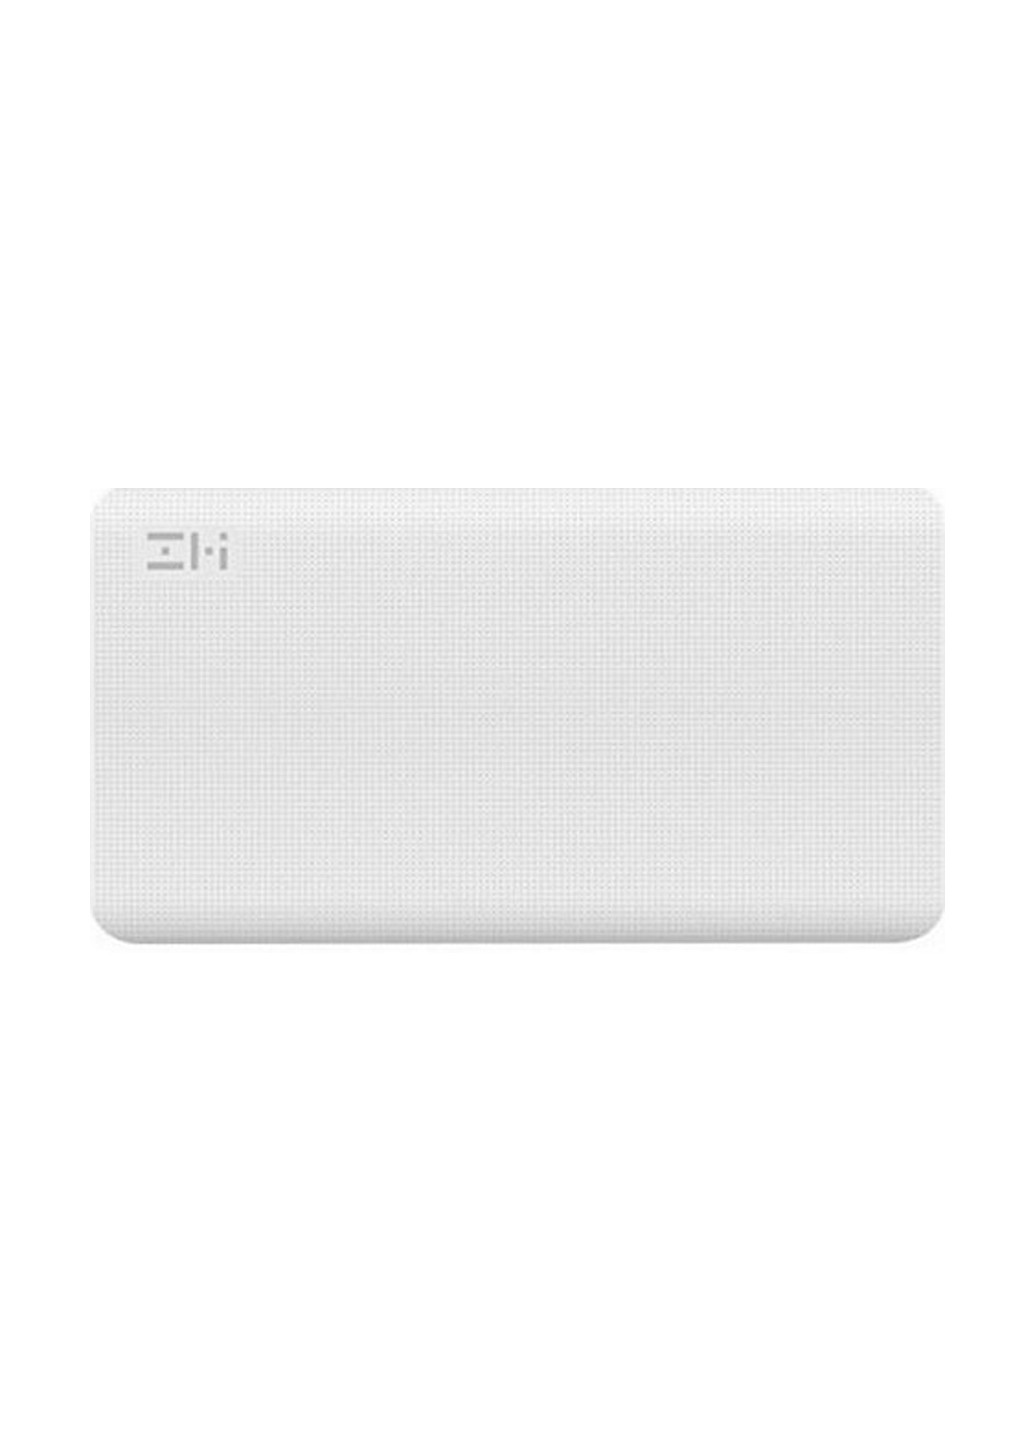 Универсальные батареи (павербанк) ZMI Power Bank 10000 mAh Type-C White (QB810W)